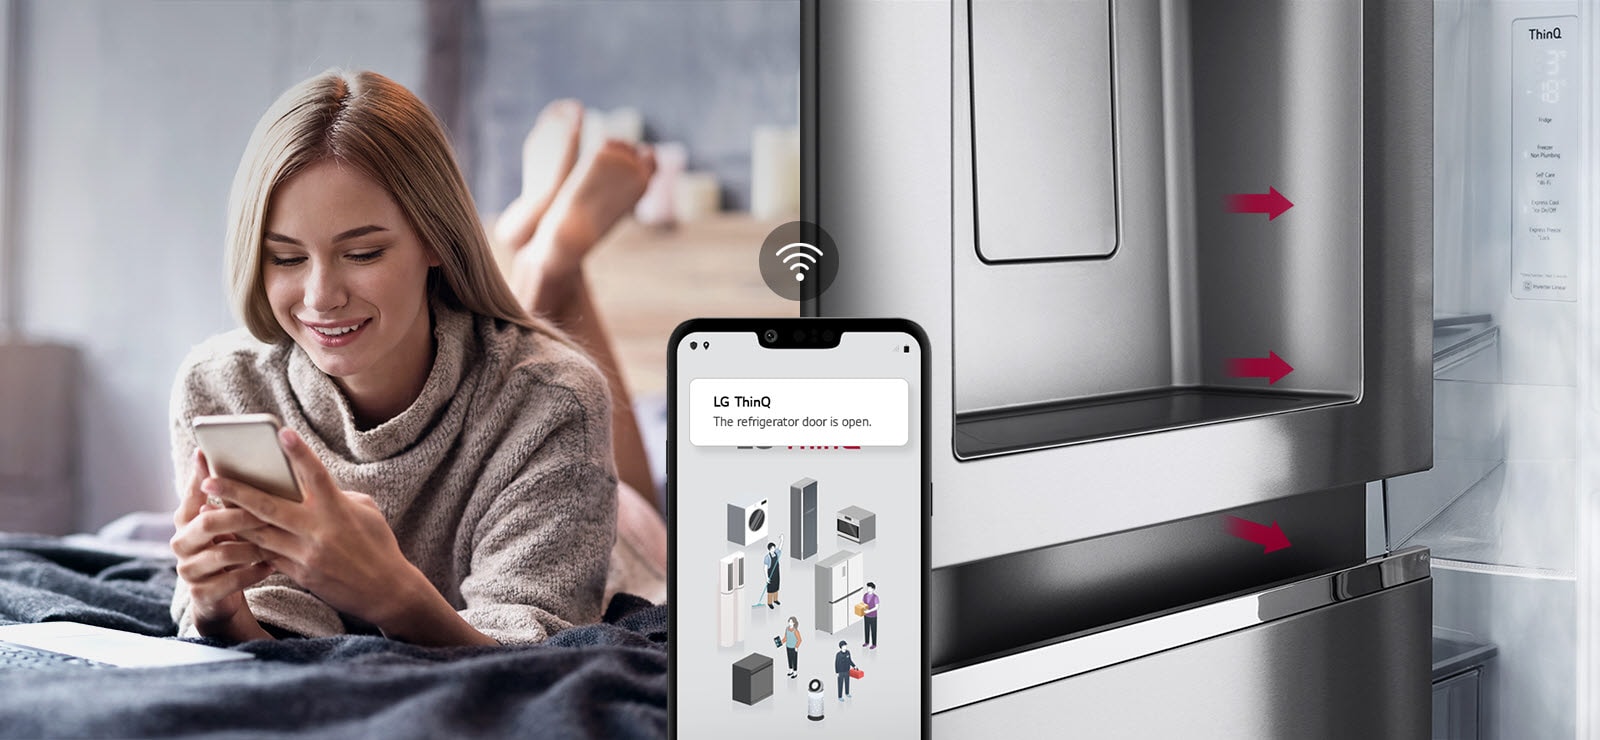 Na jednym zdjęciu kobieta leży na łóżku i patrzy na ekran telefonu. Na drugim zdjęciu widać lodówkę z niezamkniętymi drzwiami. Na pierwszym planie obu zdjęć znajduje się ekran telefonu, na którym widać powiadomienia aplikacji LG ThinQ, a nad telefonem znajduje się ikona Wi-Fi.